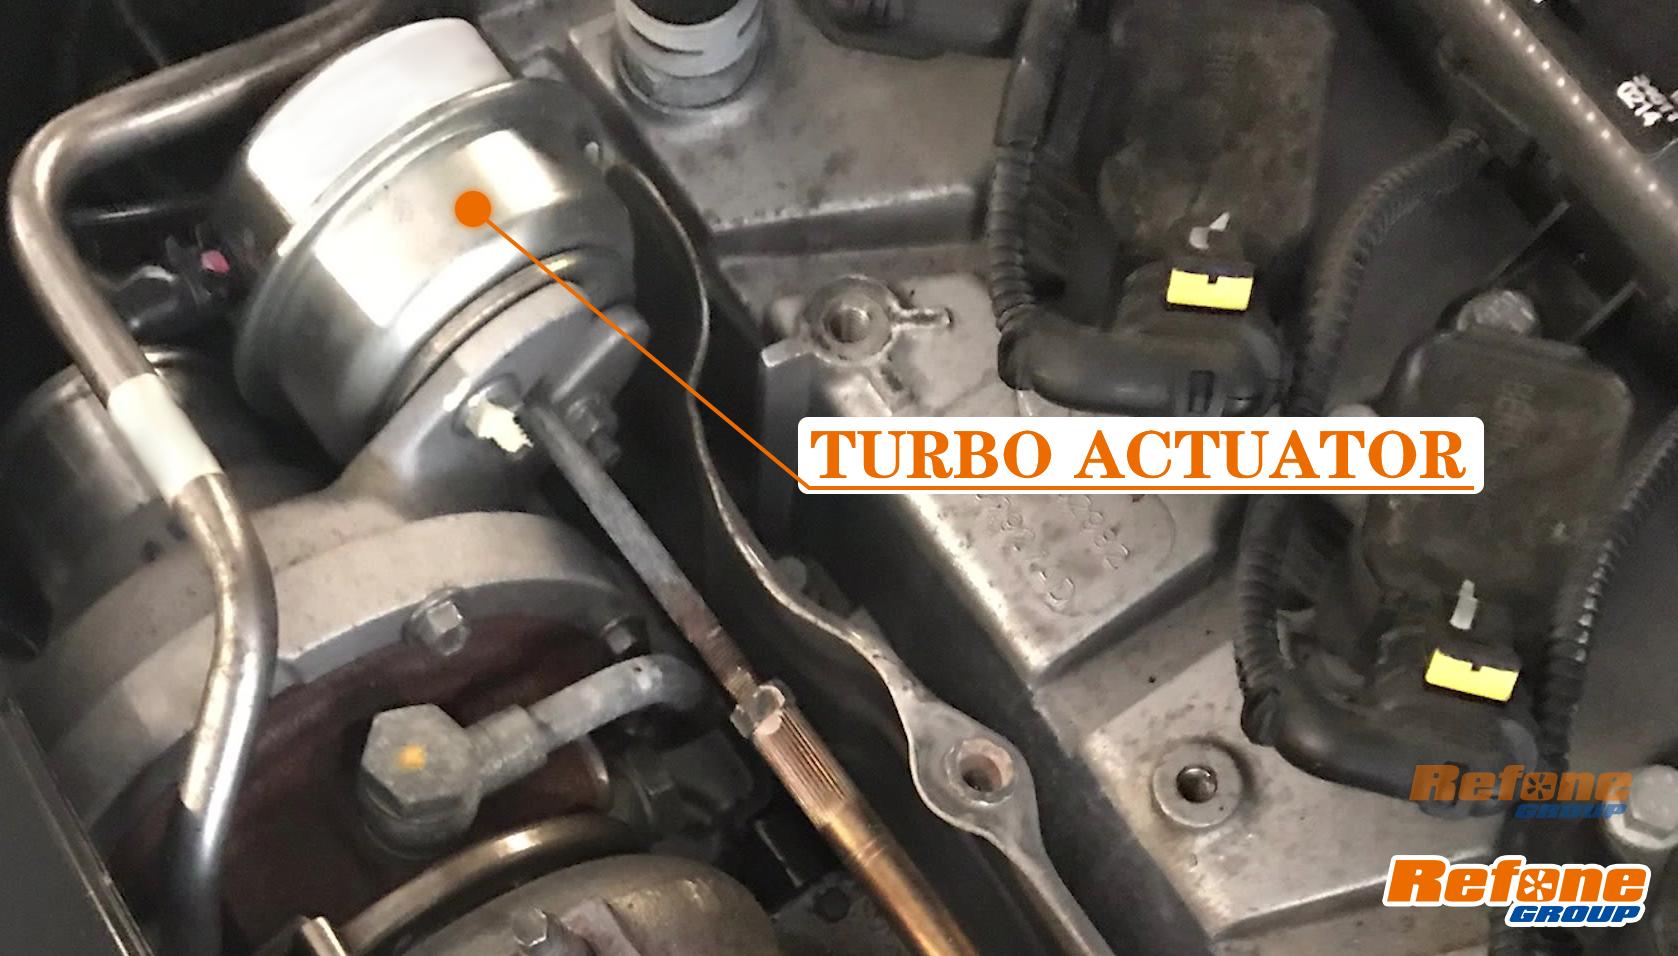 Turbo Actuator